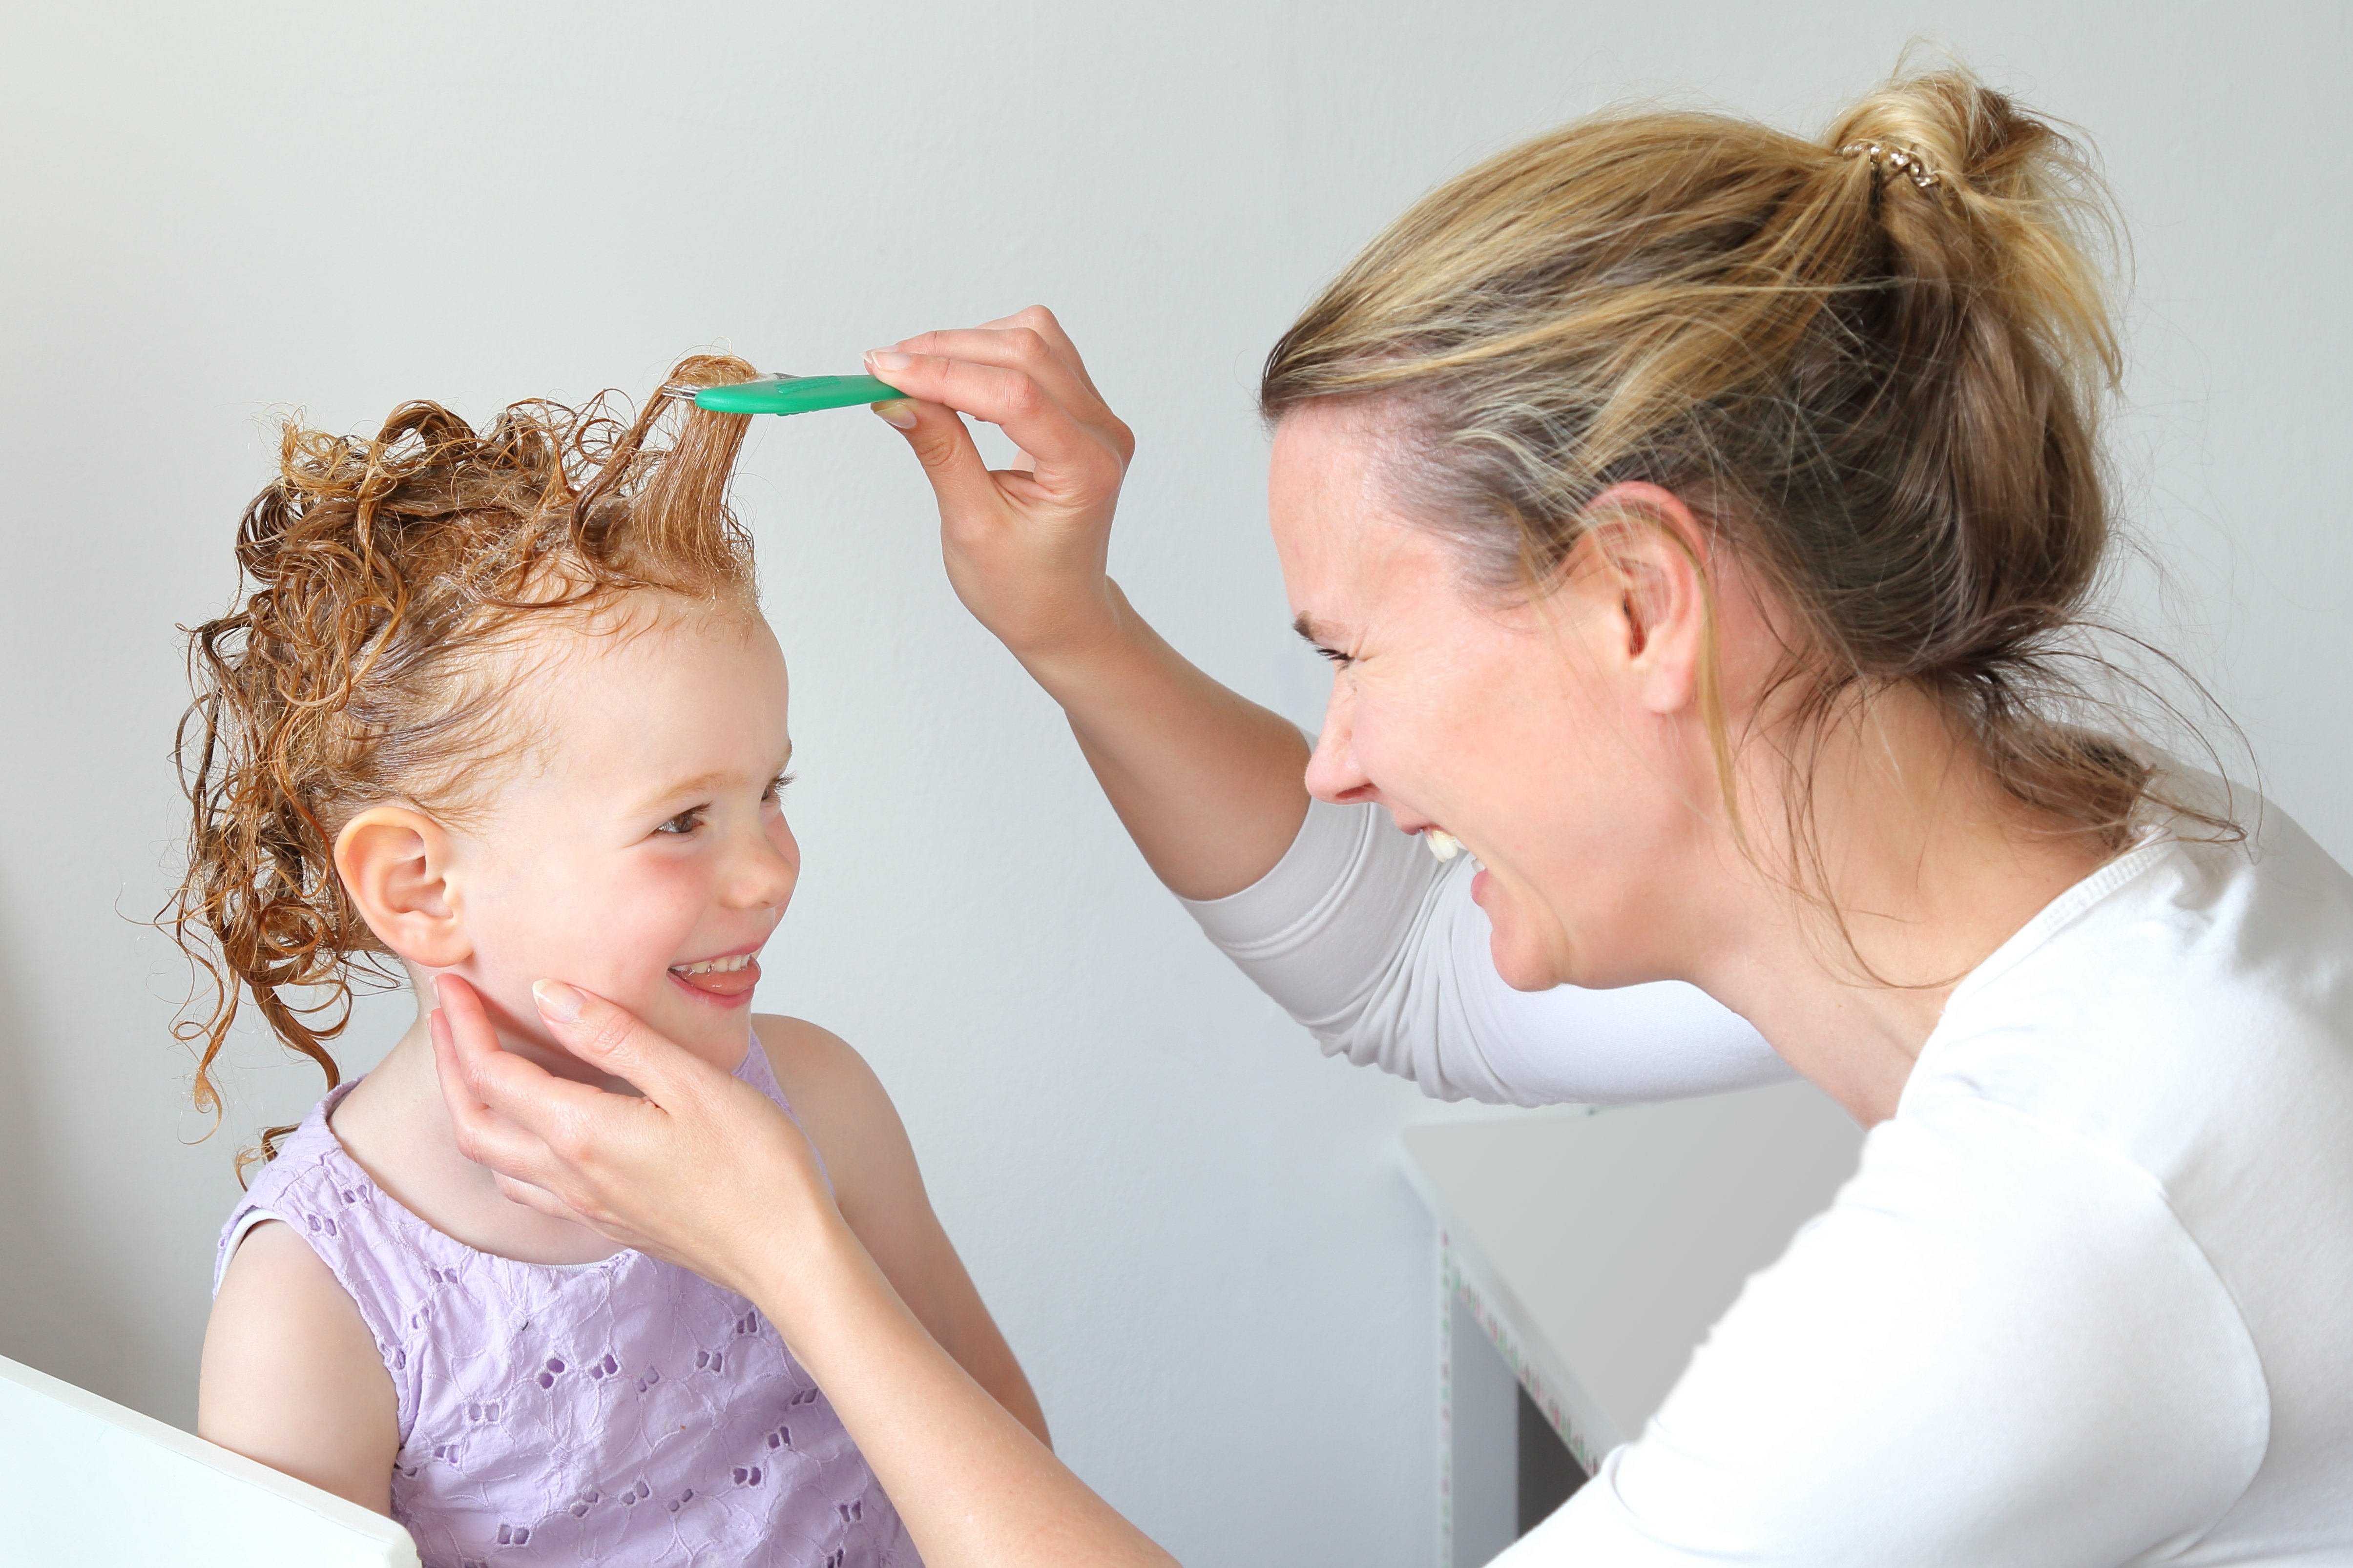 Осмотр детей на педикулез проводится перед. Волосы для детей. Профилактика от вшей. Прическа от гнид для детей.